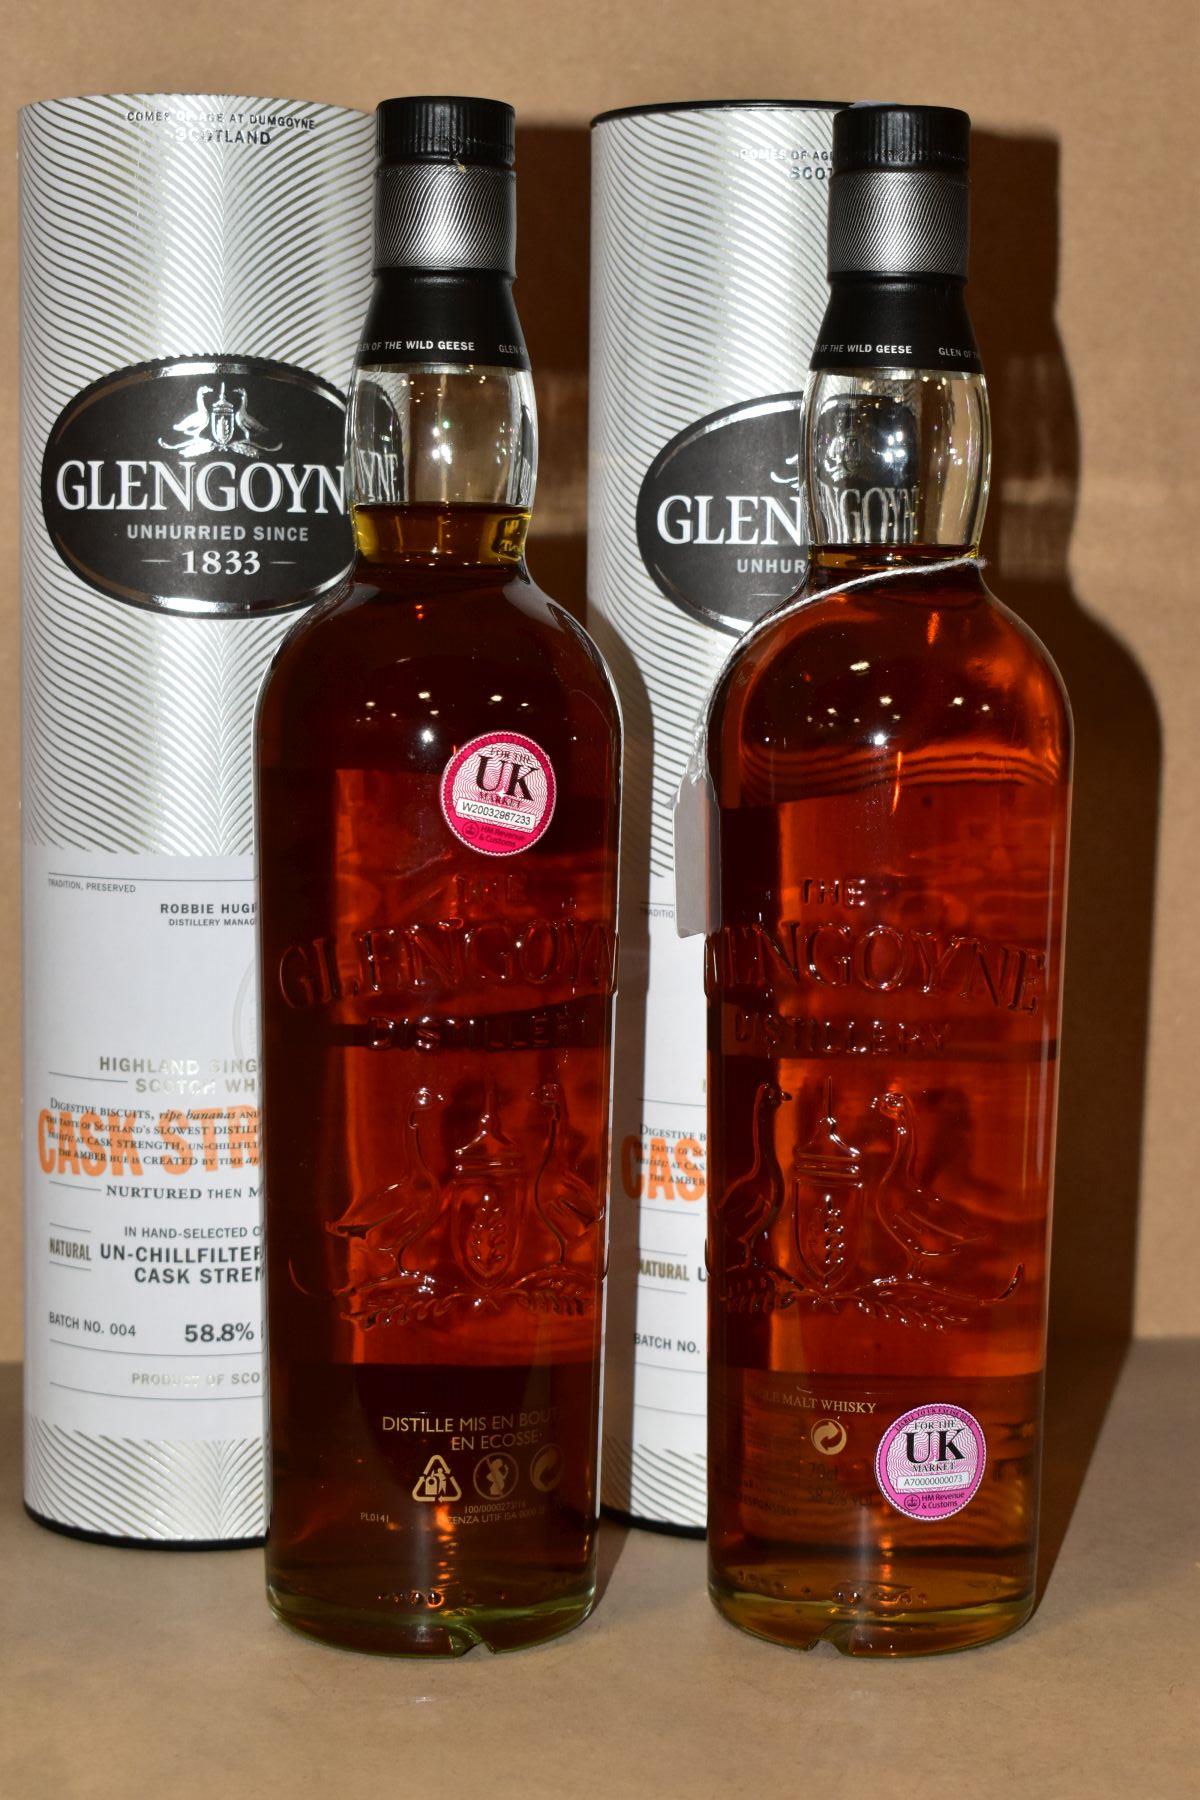 SINGLE MALT, two bottles of Glengoyne Cask Strength Single Malt Scotch Whisky, batch 003, 58.2% vol. - Image 3 of 3